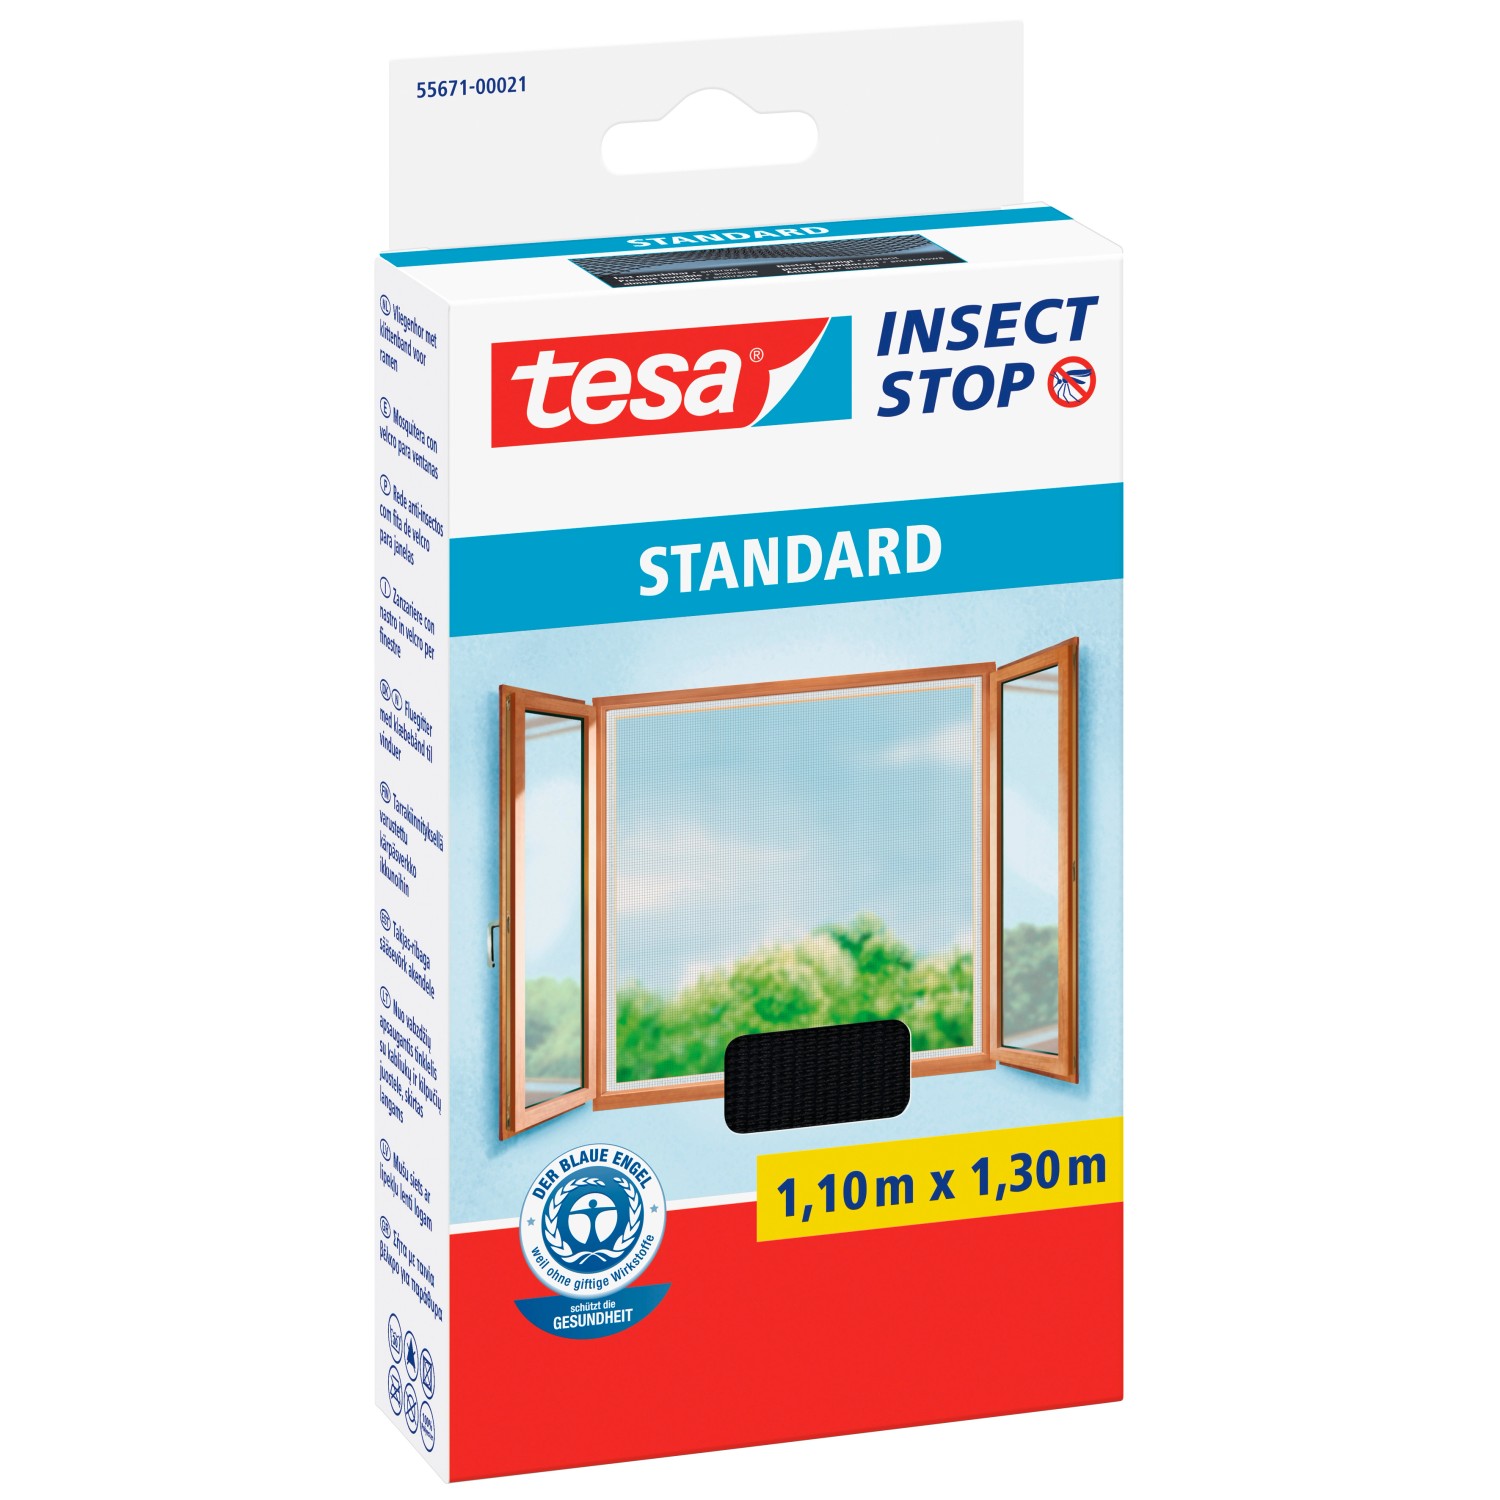 Tesa Insect Stop Fliegengitter Standard mit Klettband 130 cm x 110 cm Anthrazit